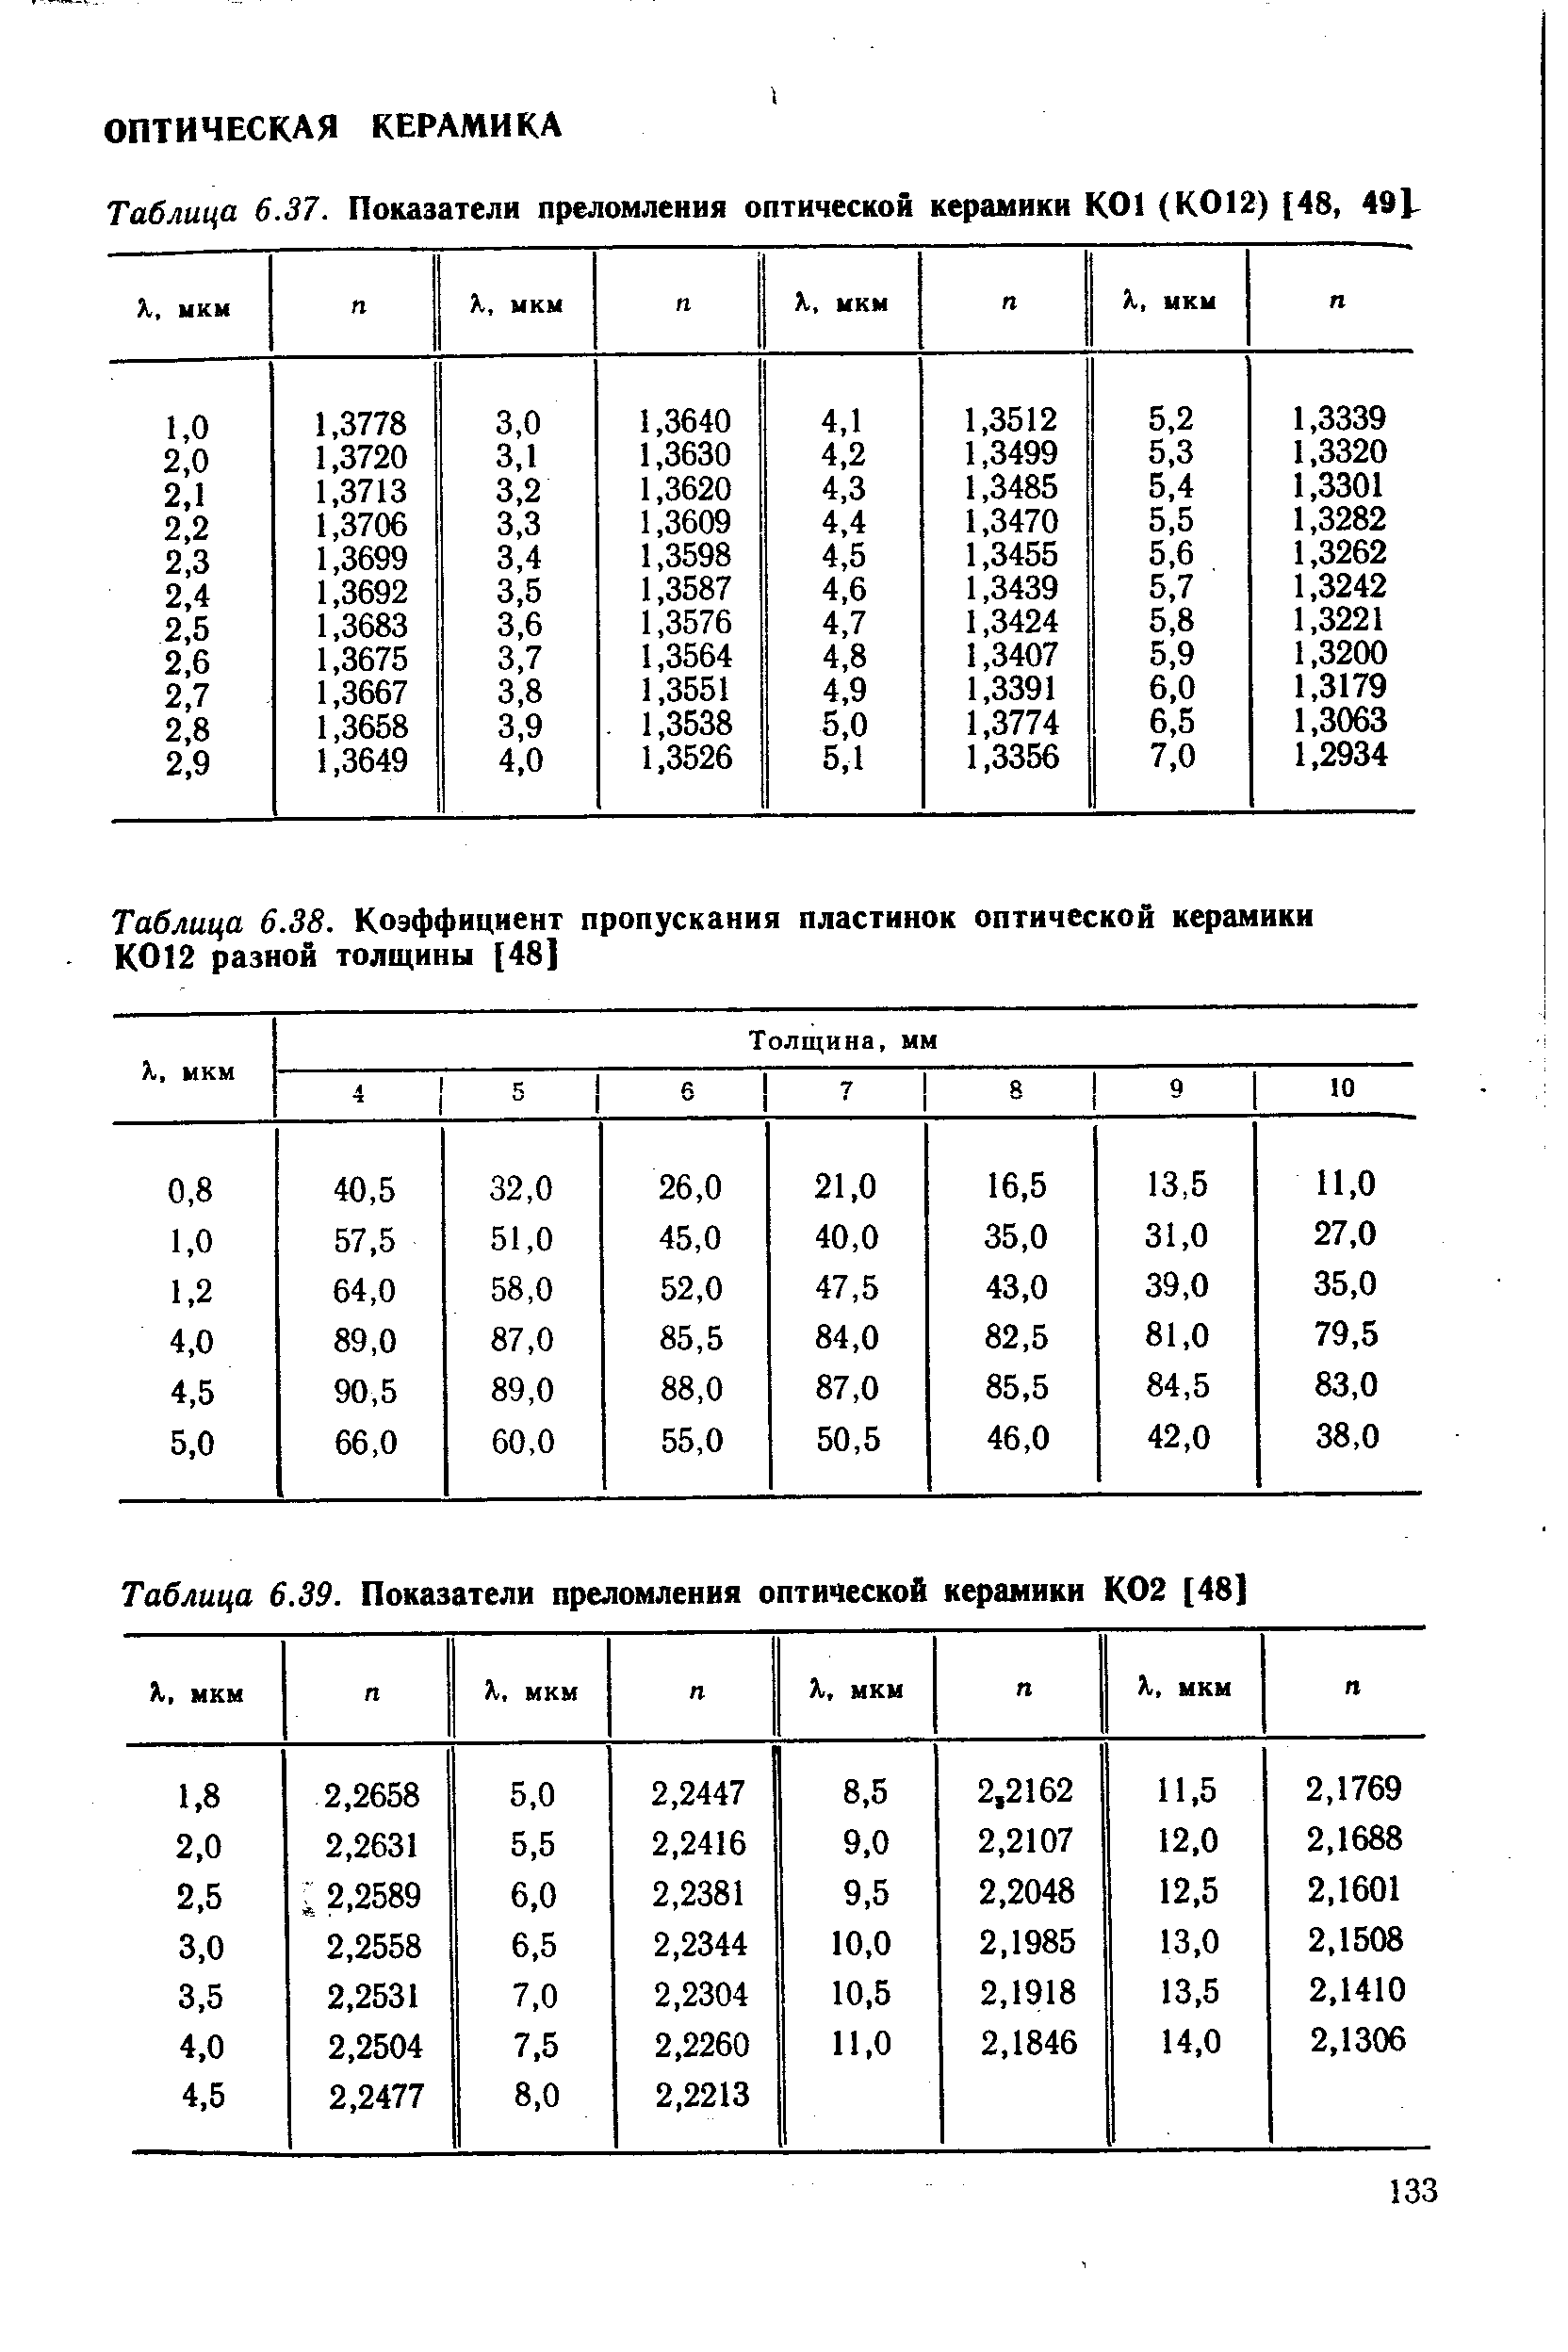 Таблица 6.39. <a href="/info/5501">Показатели преломления</a> оптической керамики К02 [48]
